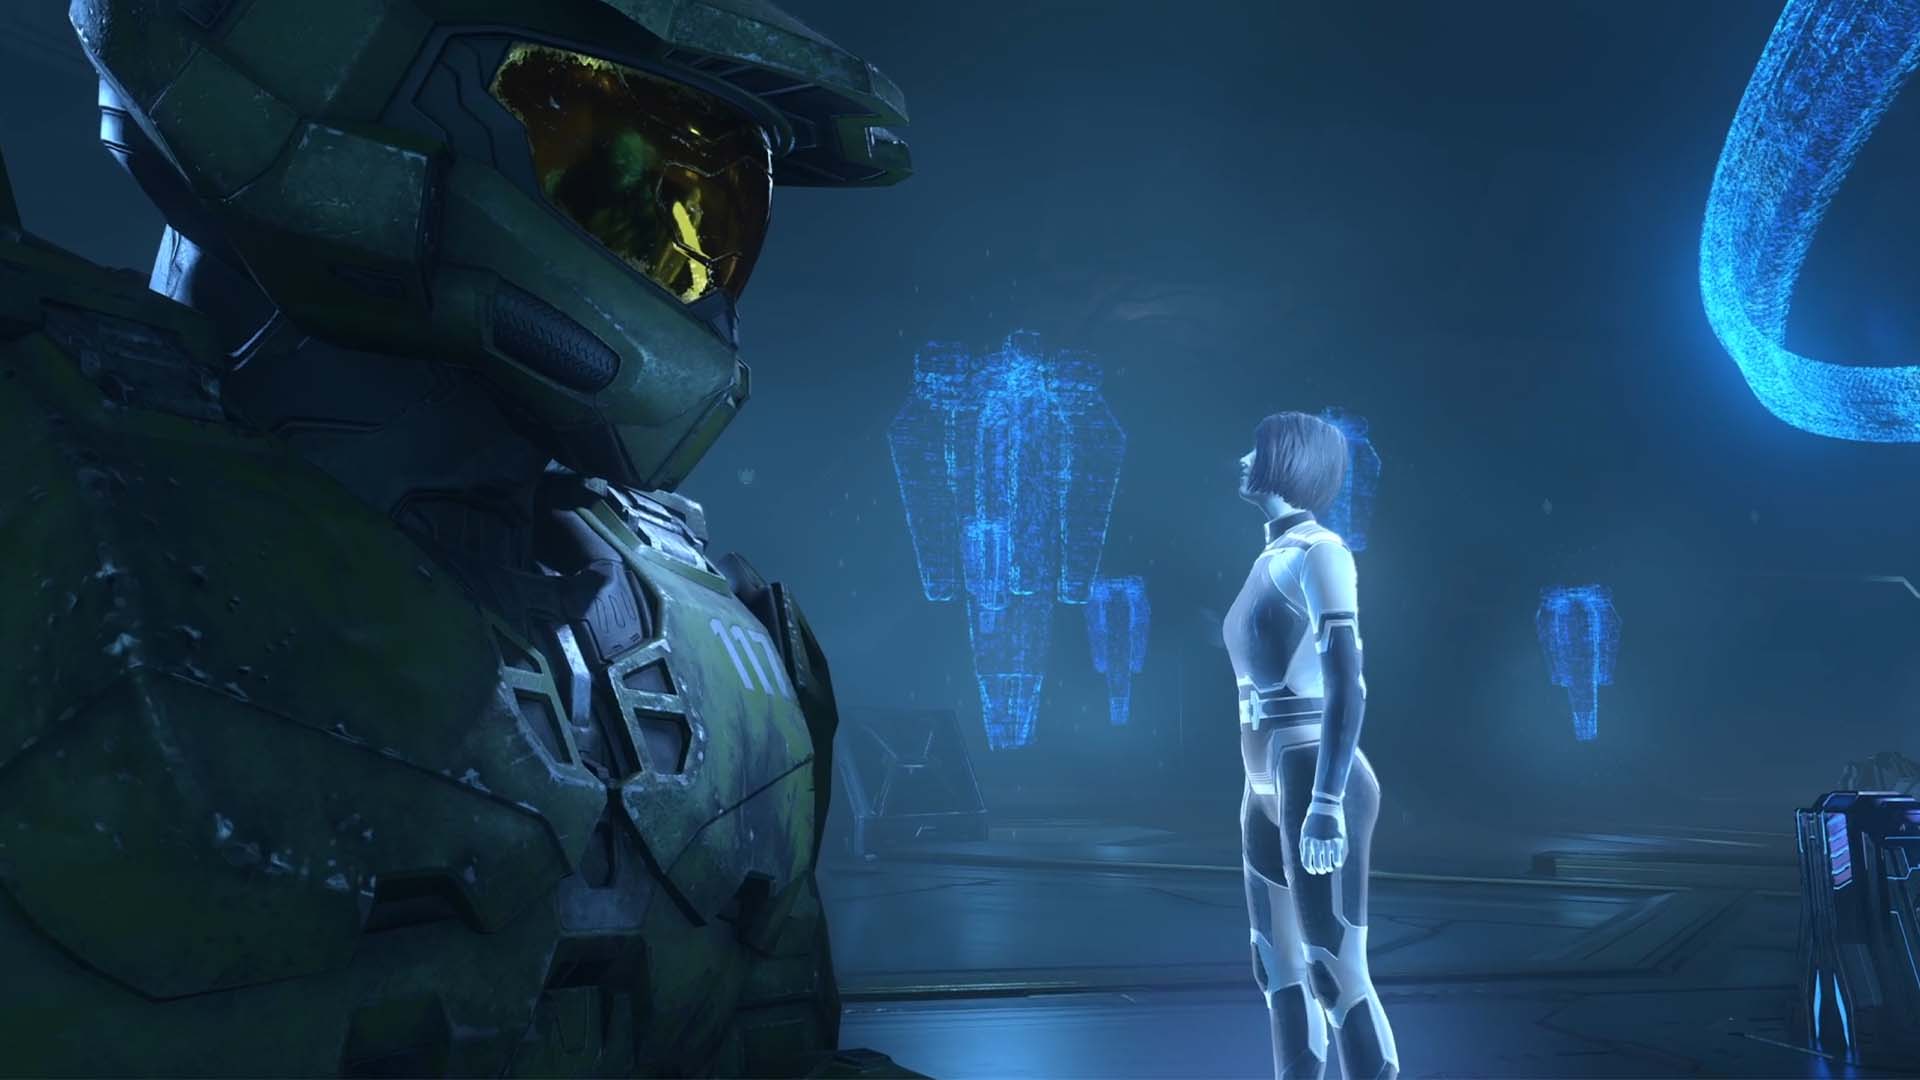 Halo Infinite campaign nexus cutscene